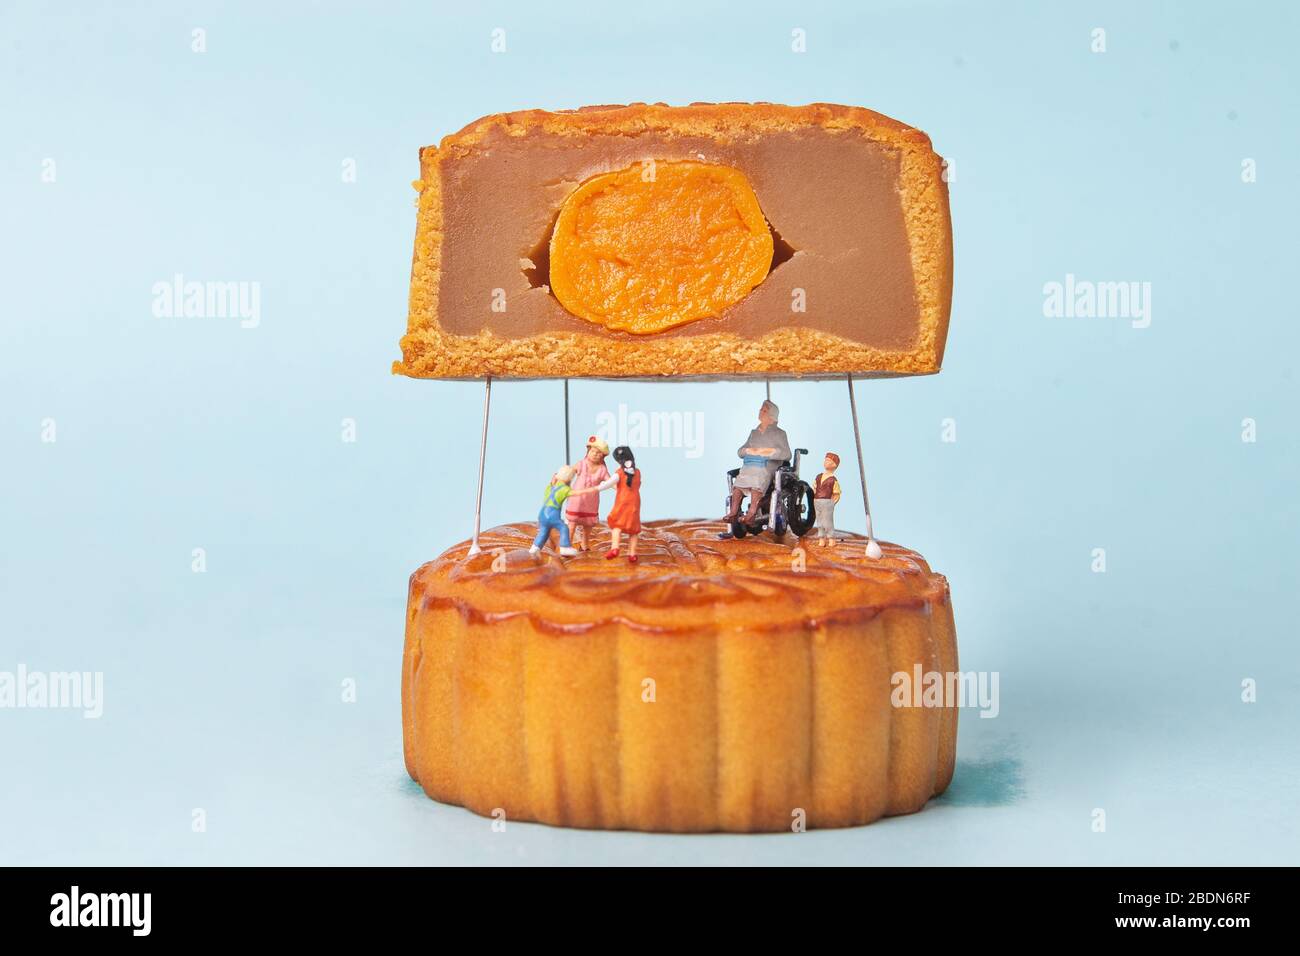 Bambola da torta immagini e fotografie stock ad alta risoluzione - Alamy